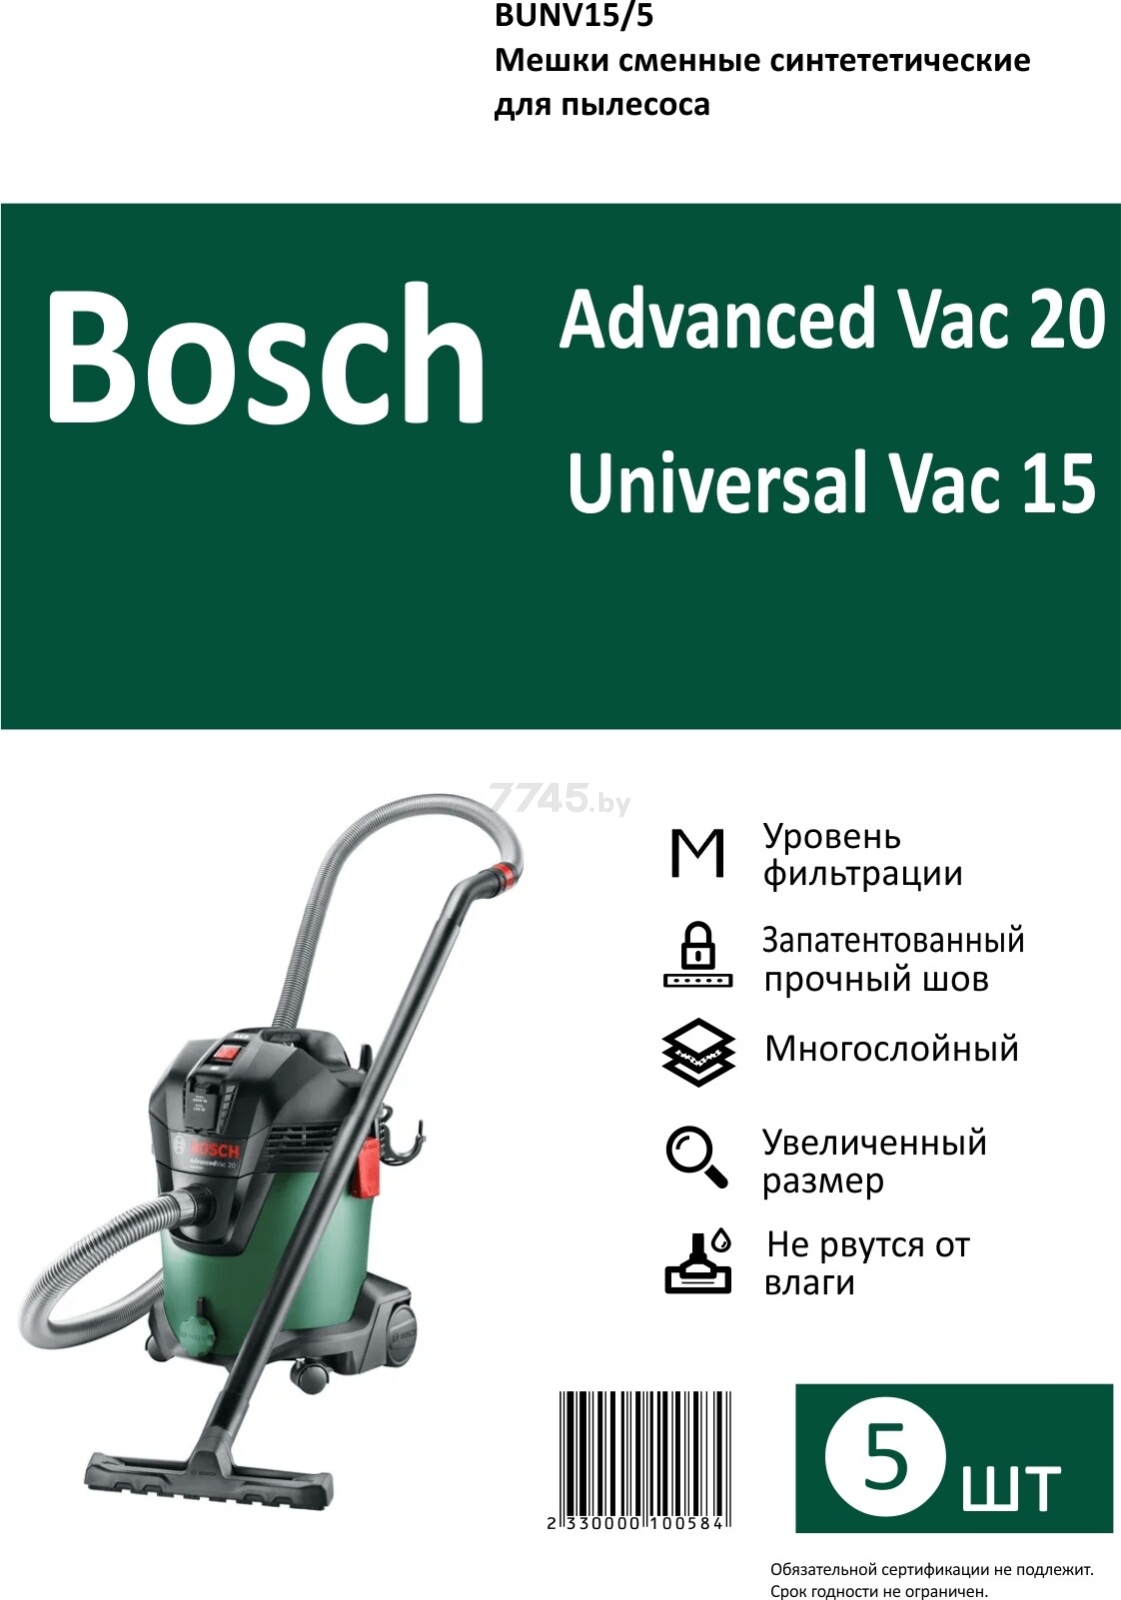 Мешок для пылесоса Bosch Universal Vac 15 DR.ELECTRO 5 штук (BUNV15/5) - Фото 5